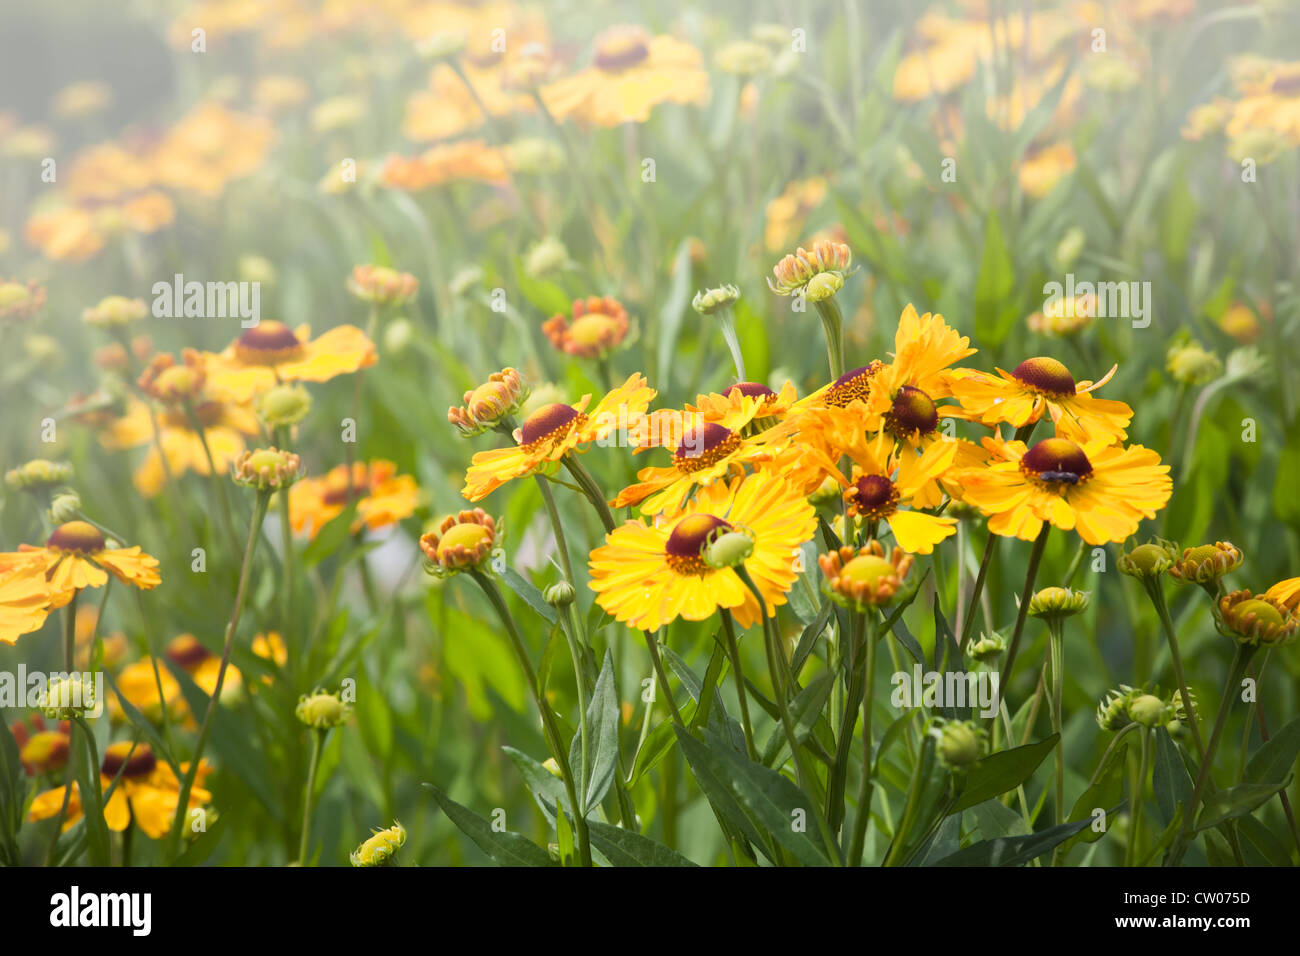 Bright yellow helenium flowers in the garden Stock Photo